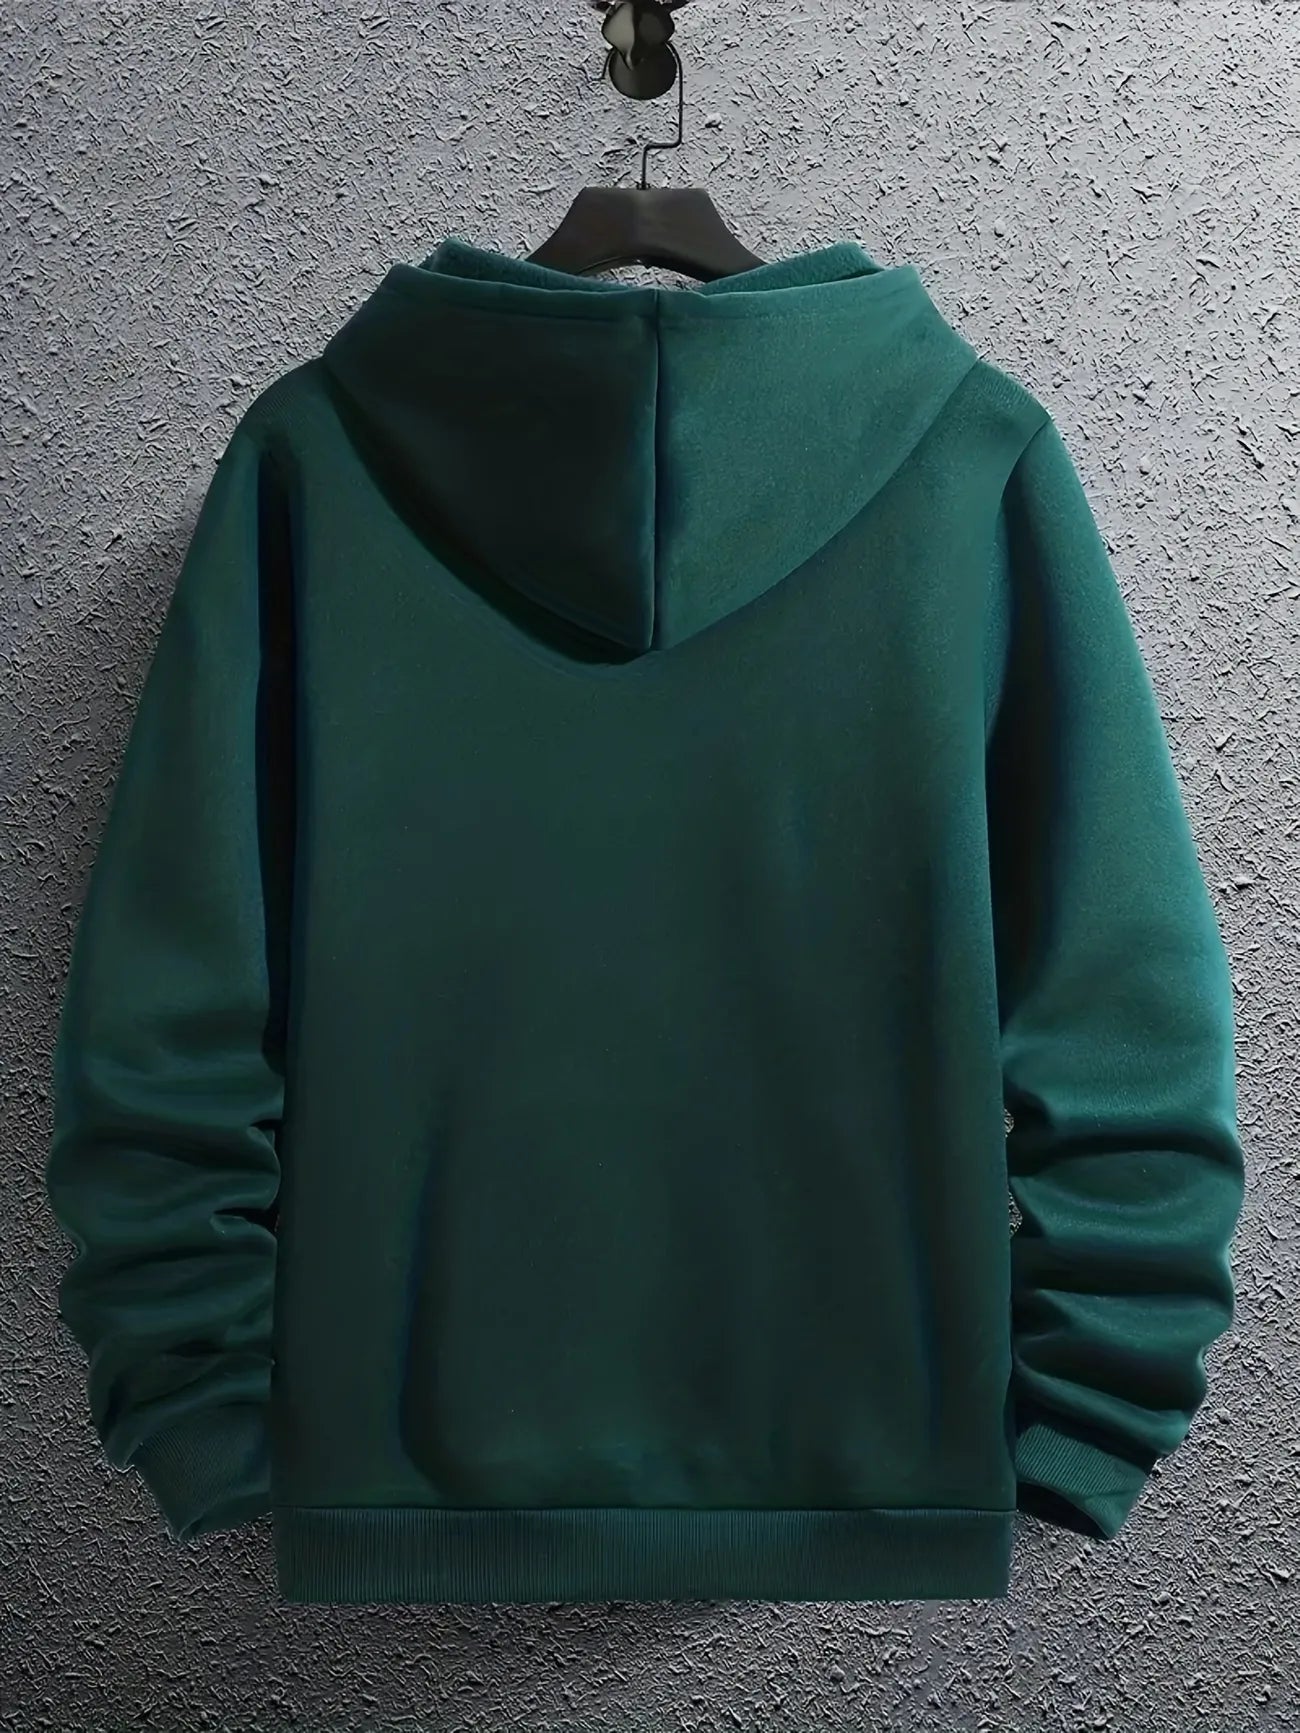 Tee Tall Mens Printed Hooded Zip Jacket - TTMPHZJPR4 - Green